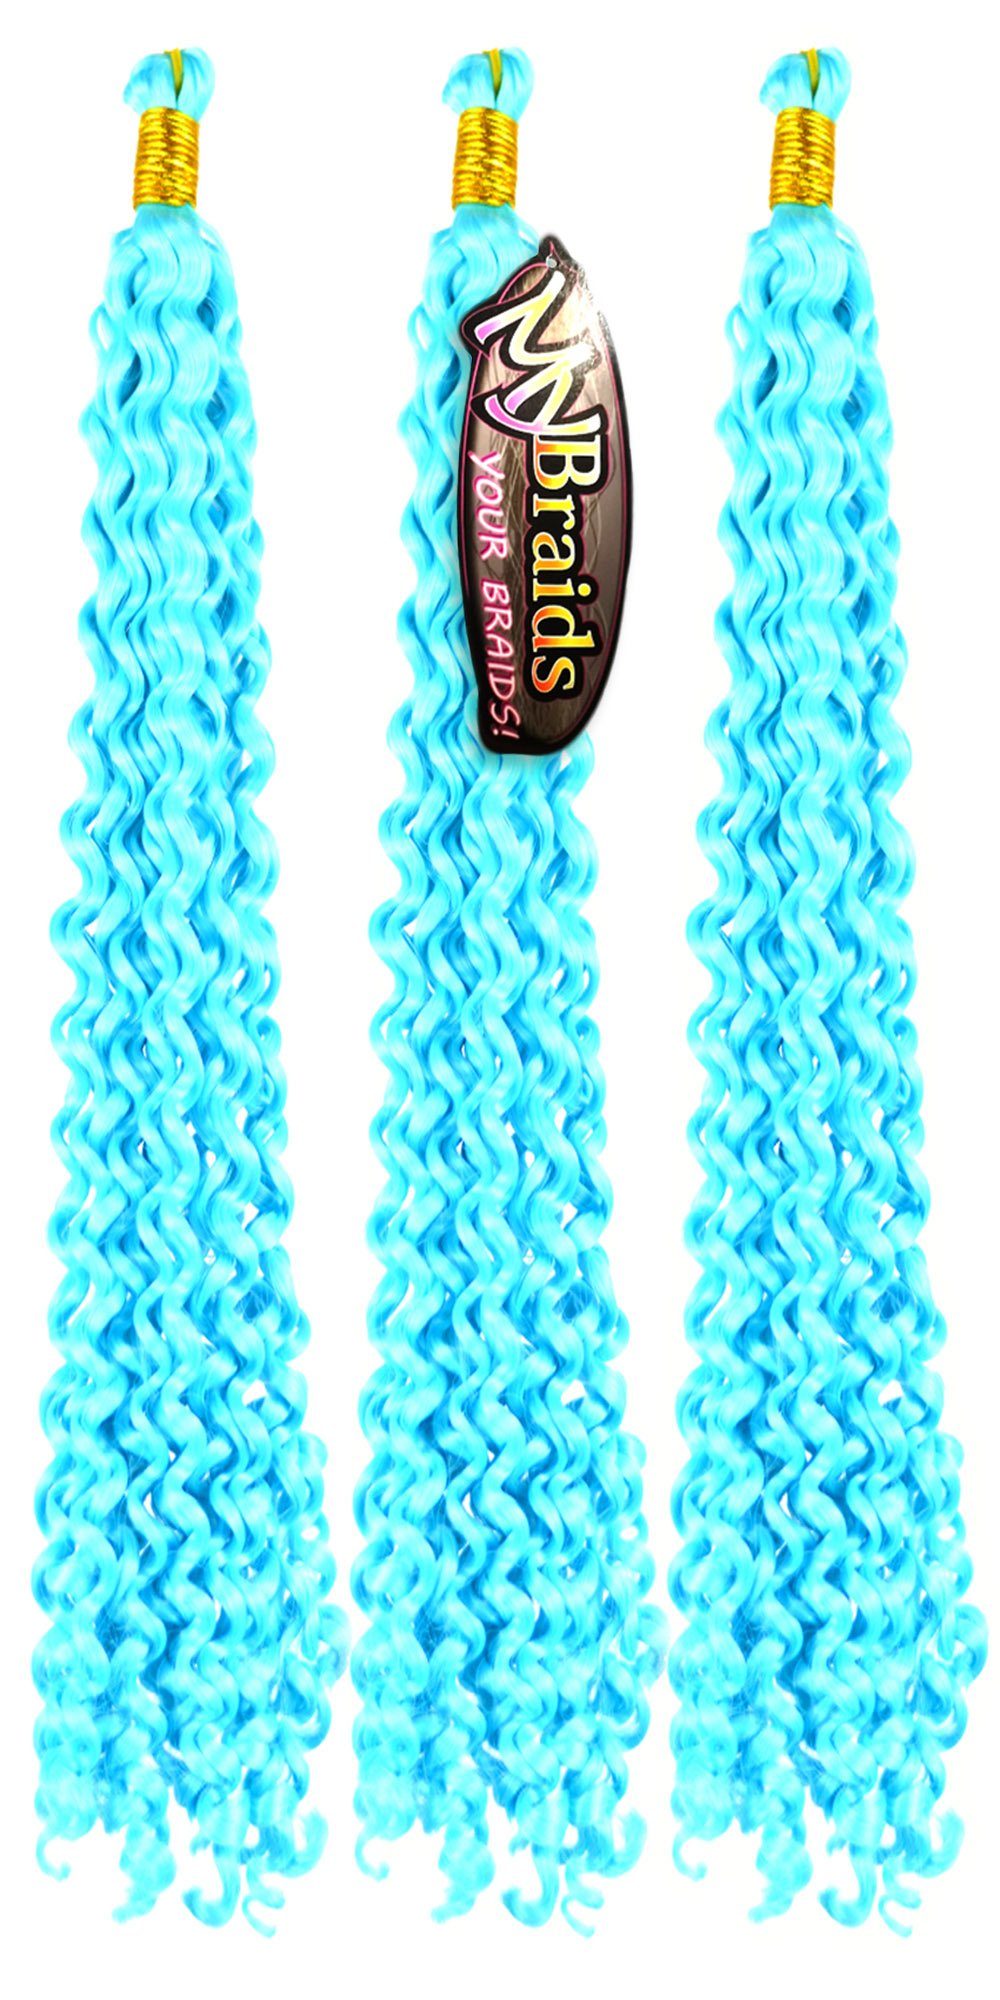 Wellig Deep Crochet YOUR Wave 16-W Hellblau Braids Pack 3er BRAIDS! Zöpfe MyBraids Kunsthaar-Extension Flechthaar